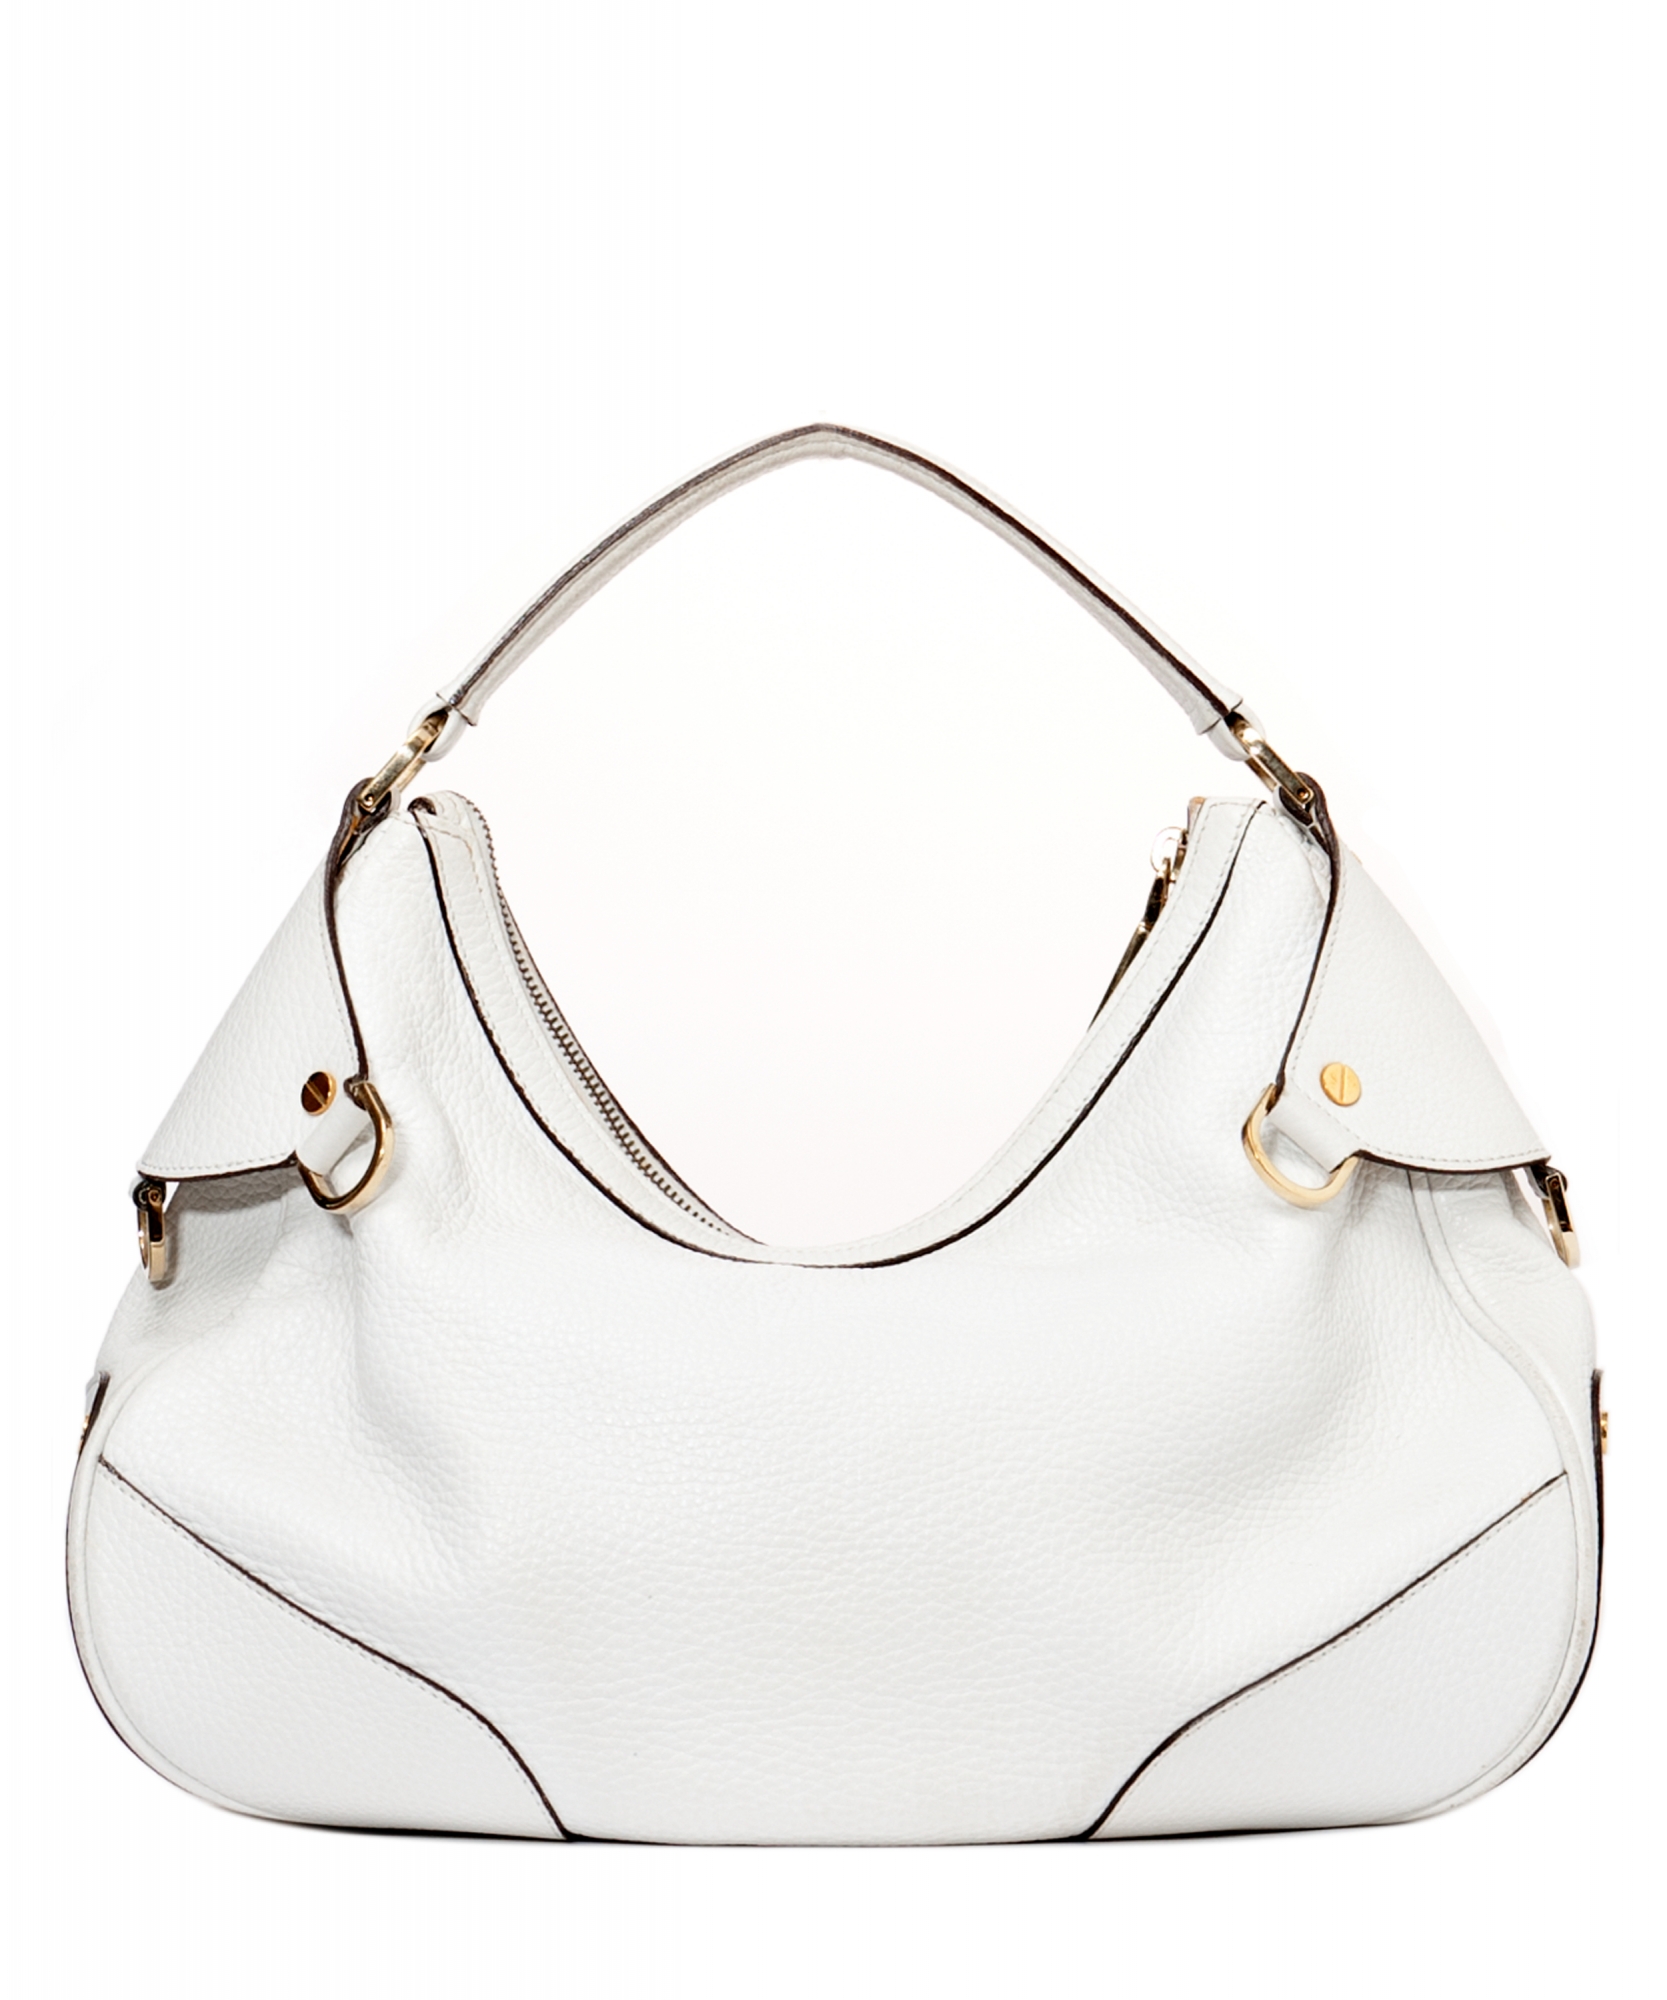 Gianni Versace, white leather bag. - Bukowskis